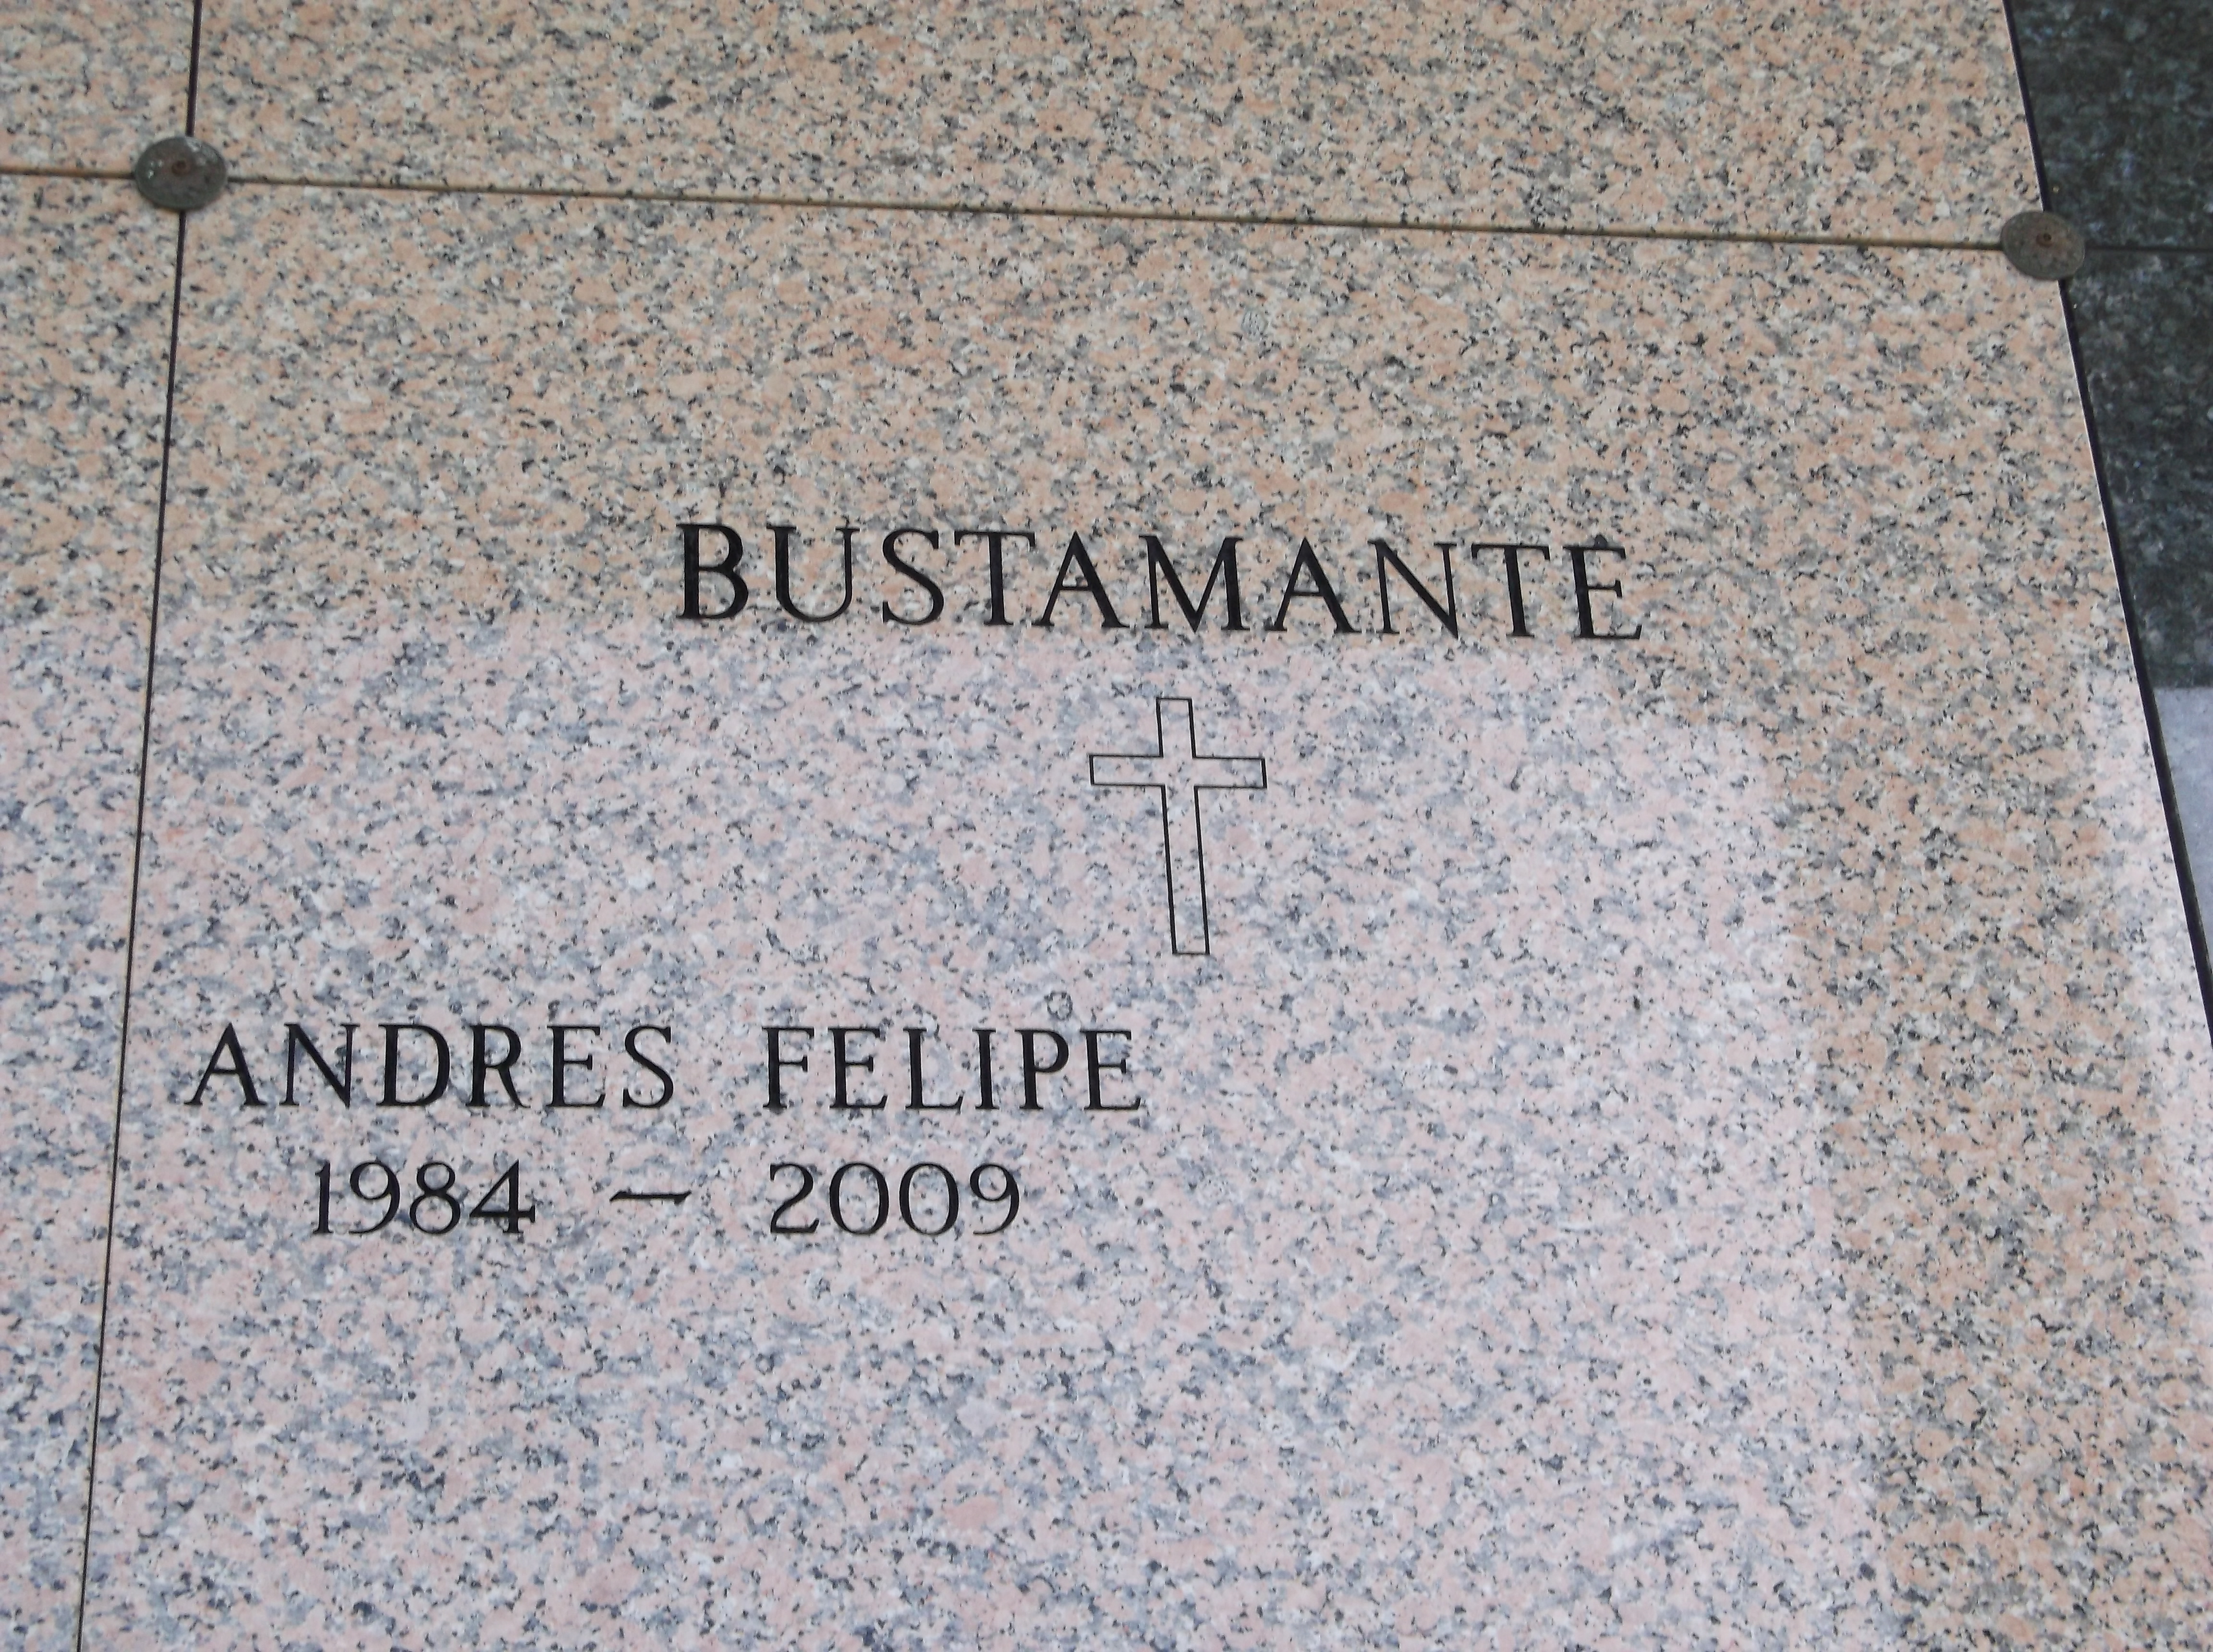 Andres Felipe Bustamante